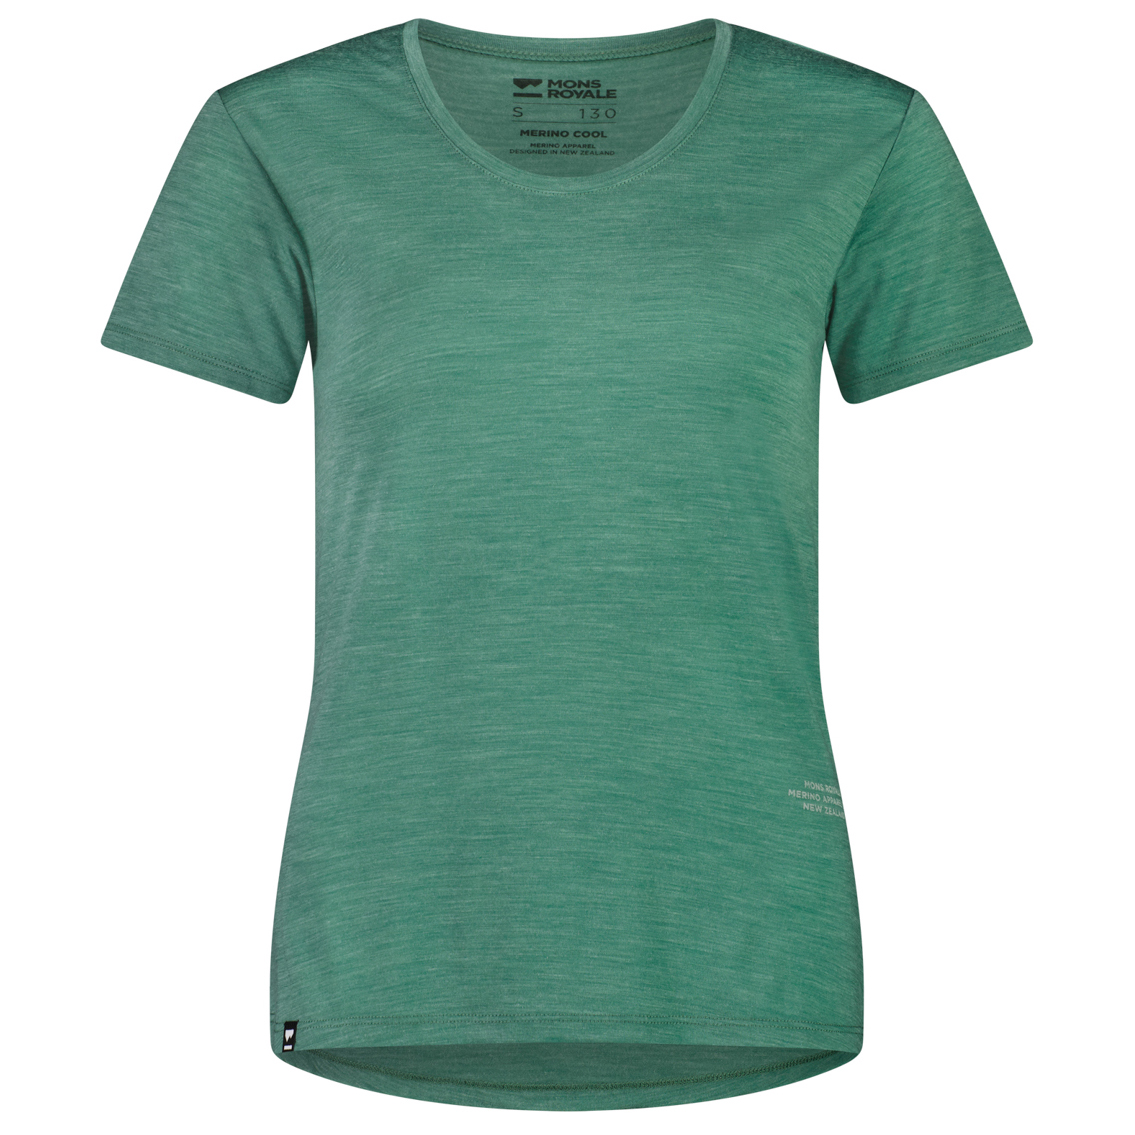 Рубашка из мериноса Mons Royale Women's Zephyr Merino Cool Tee, цвет Smokey Green